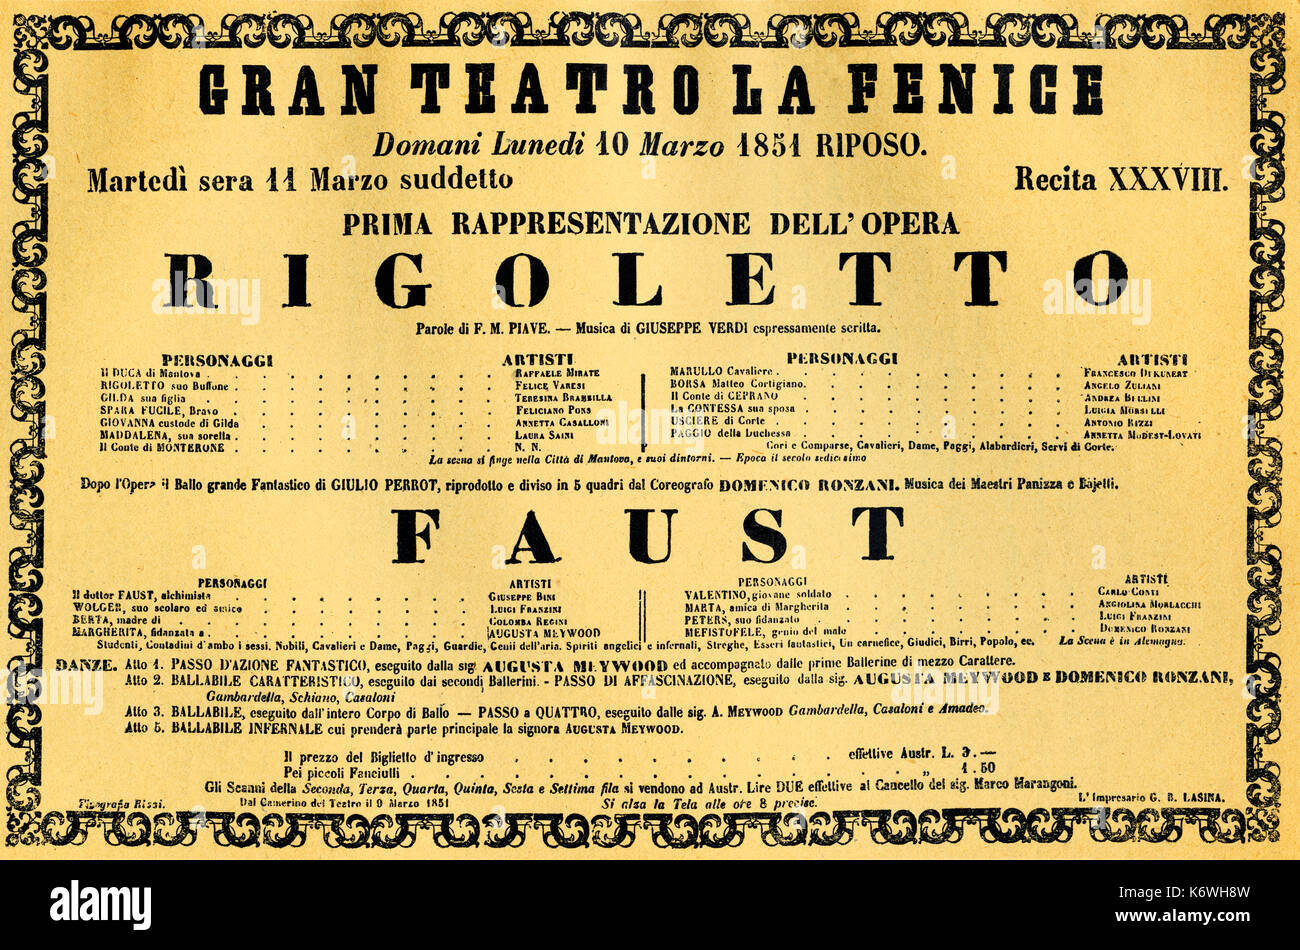 VERDI, Giuseppe - Rigoletto premiere 11 marzo 1851 poster per la Fenice di Venezia. Compositore italiano (1813-1901) PRENOTA: Verdi - e la fenice, PG32 Foto Stock